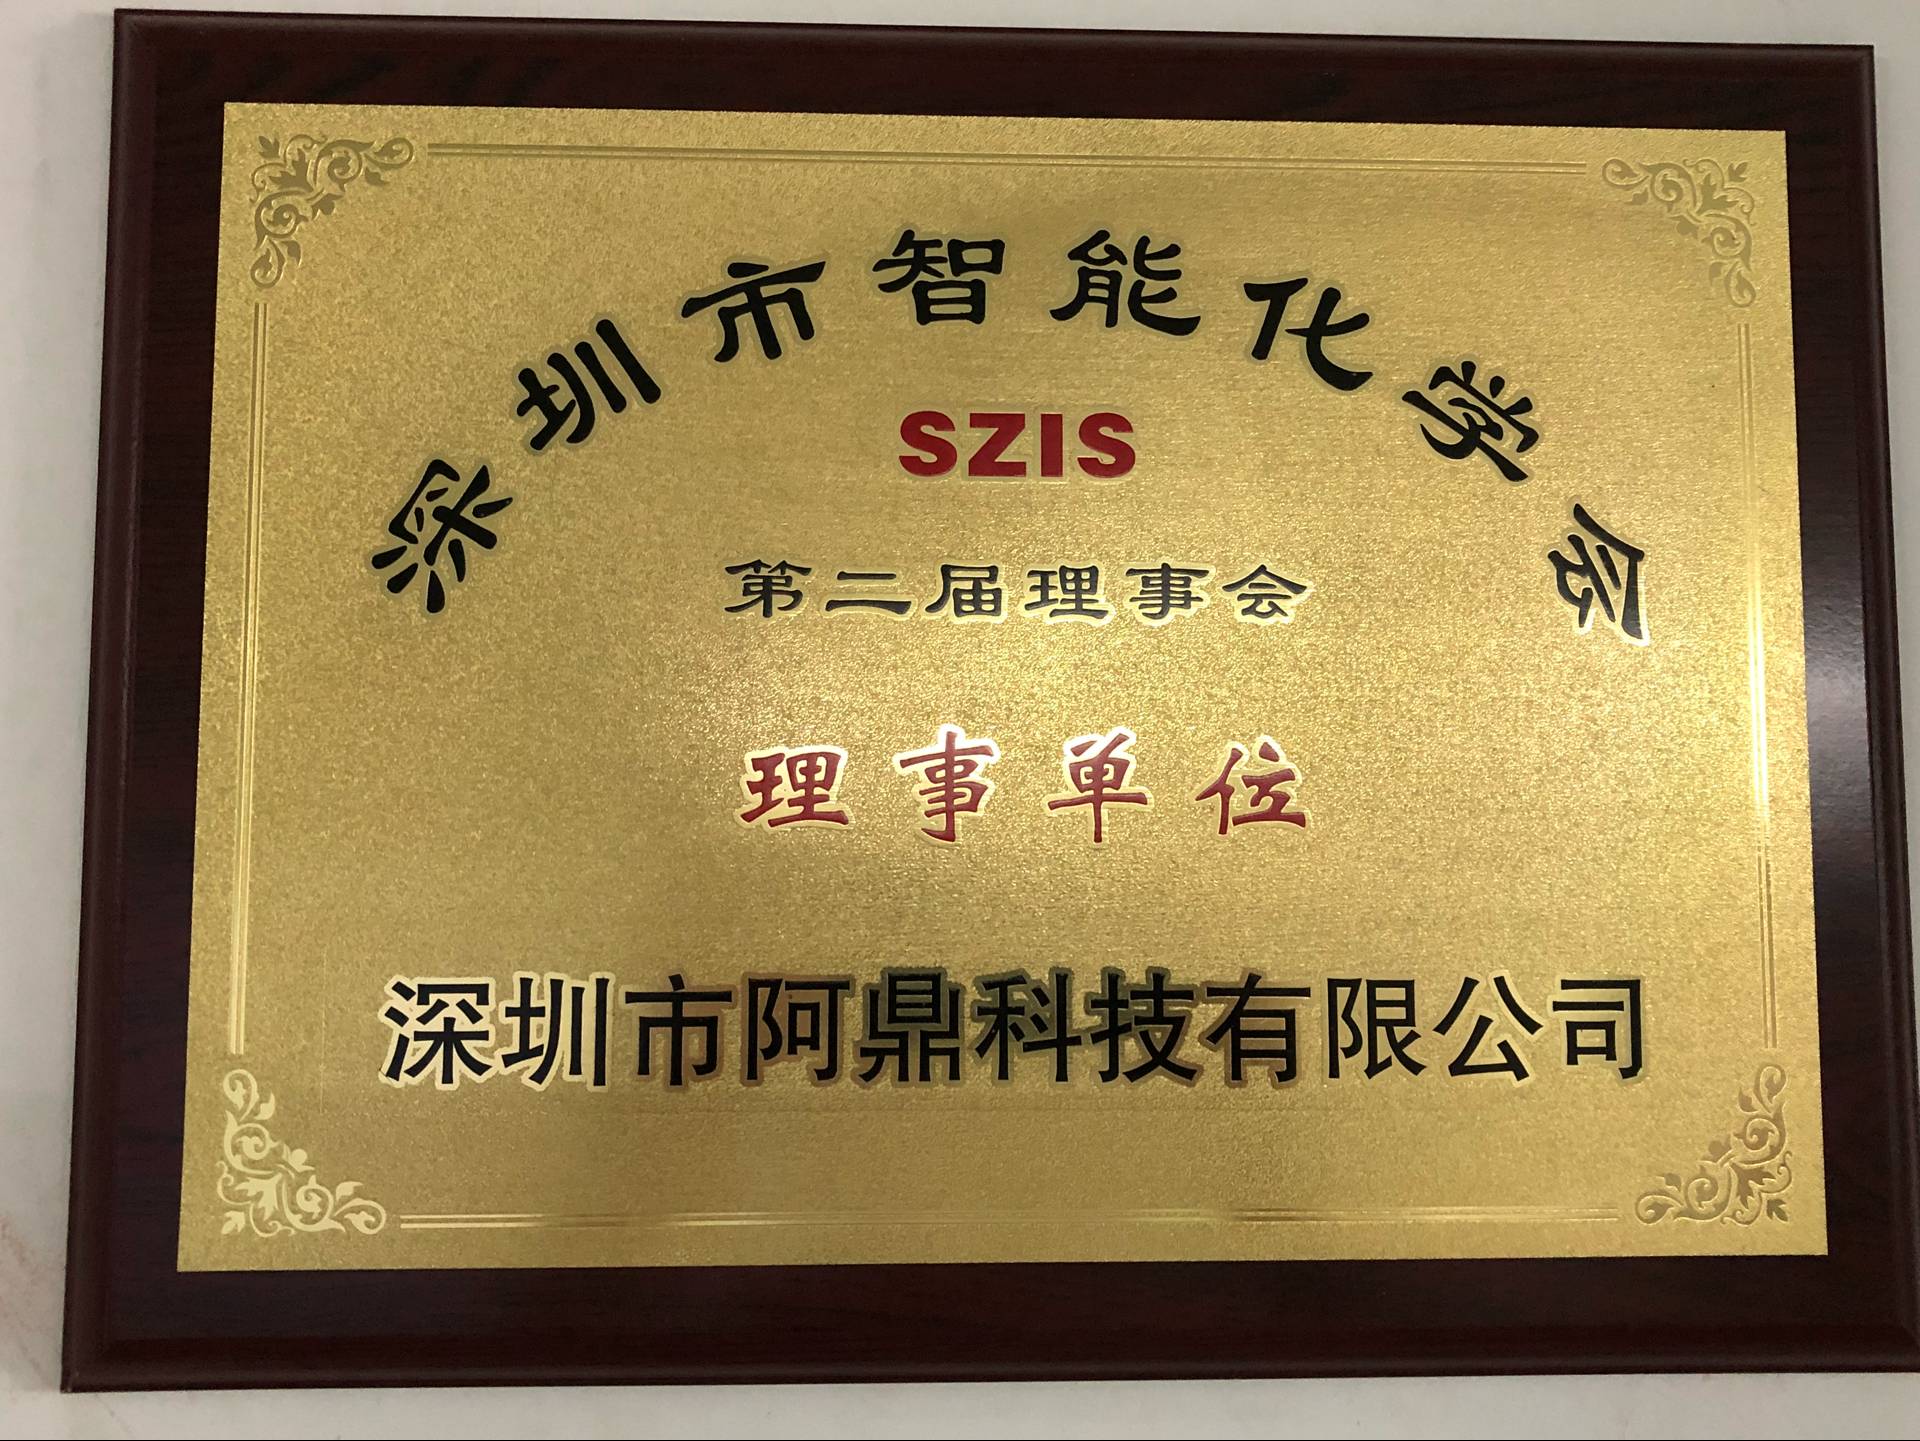 Shenzhen intelligent chemistry Association